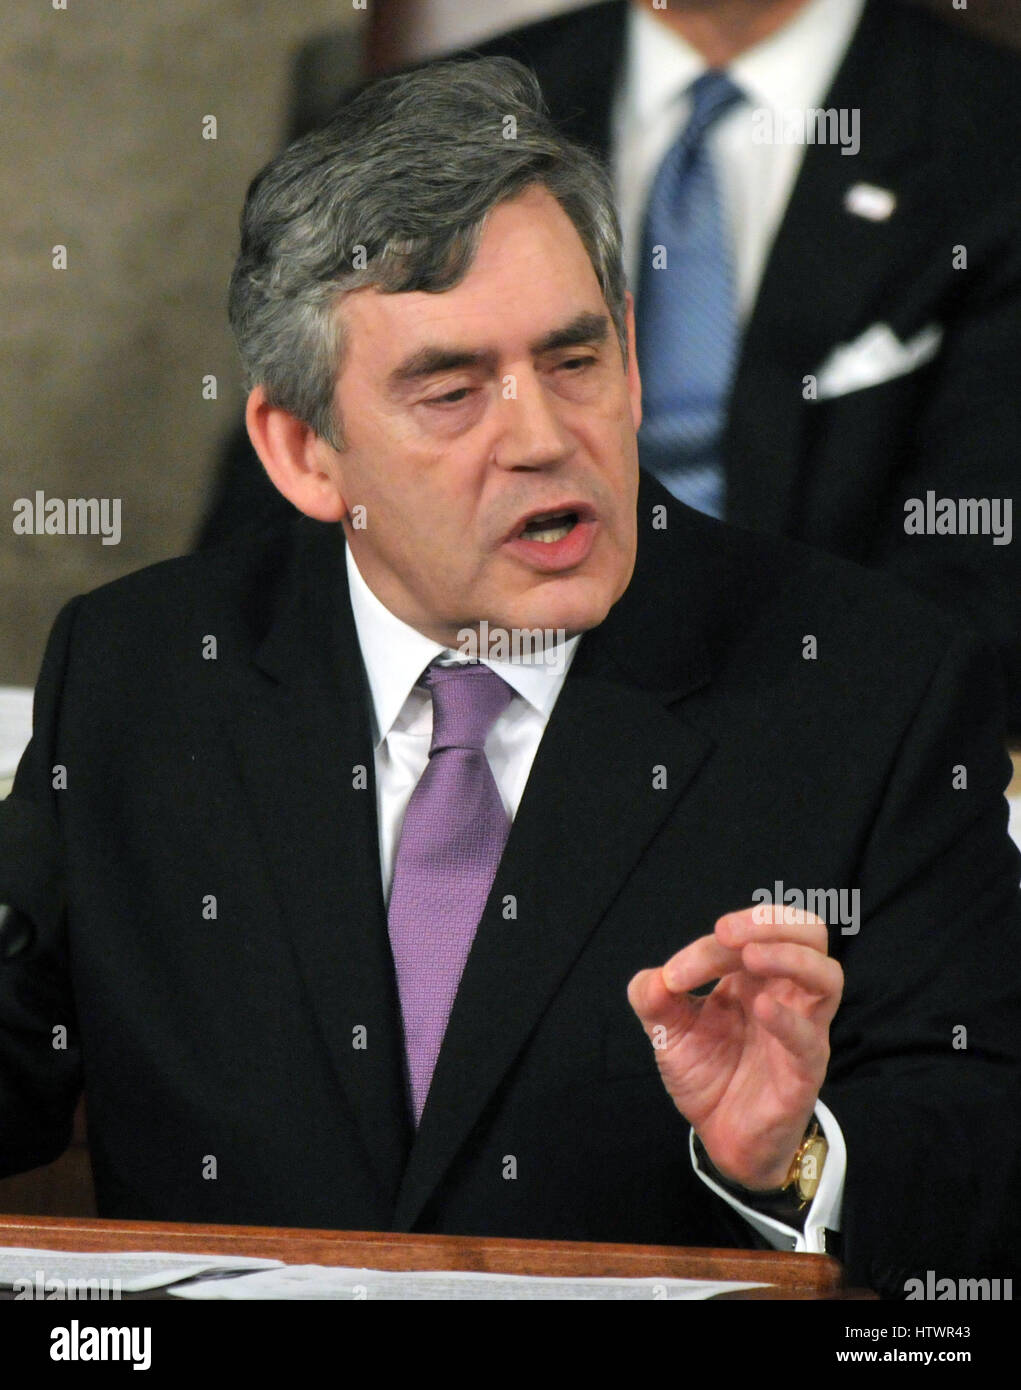 Washington, DC - 4. März 2009--The Recht Honorable Gordon Brown, M.P., Premierminister des Vereinigten Königreichs, befasst sich mit einer gemeinsamen Sitzung des Kongresses der Vereinigten Staaten in den US Kapitol in Washington, D.C auf Mittwoch, 4. März 2009 Stockfoto